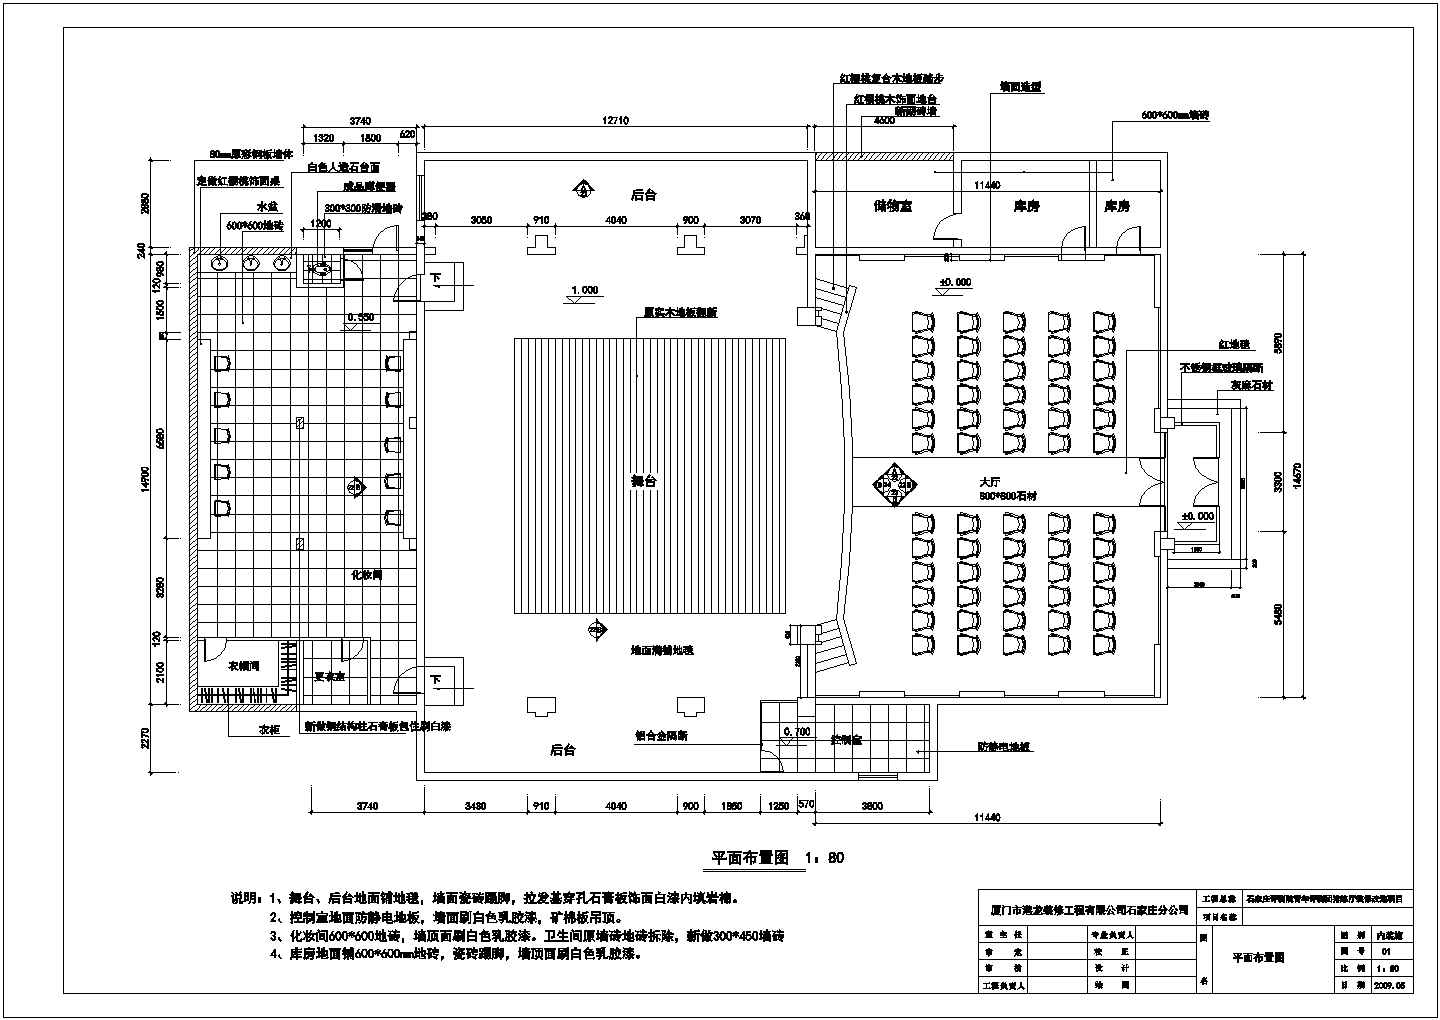 石家庄框架结构评剧院排练厅室内装修改造设计施工图